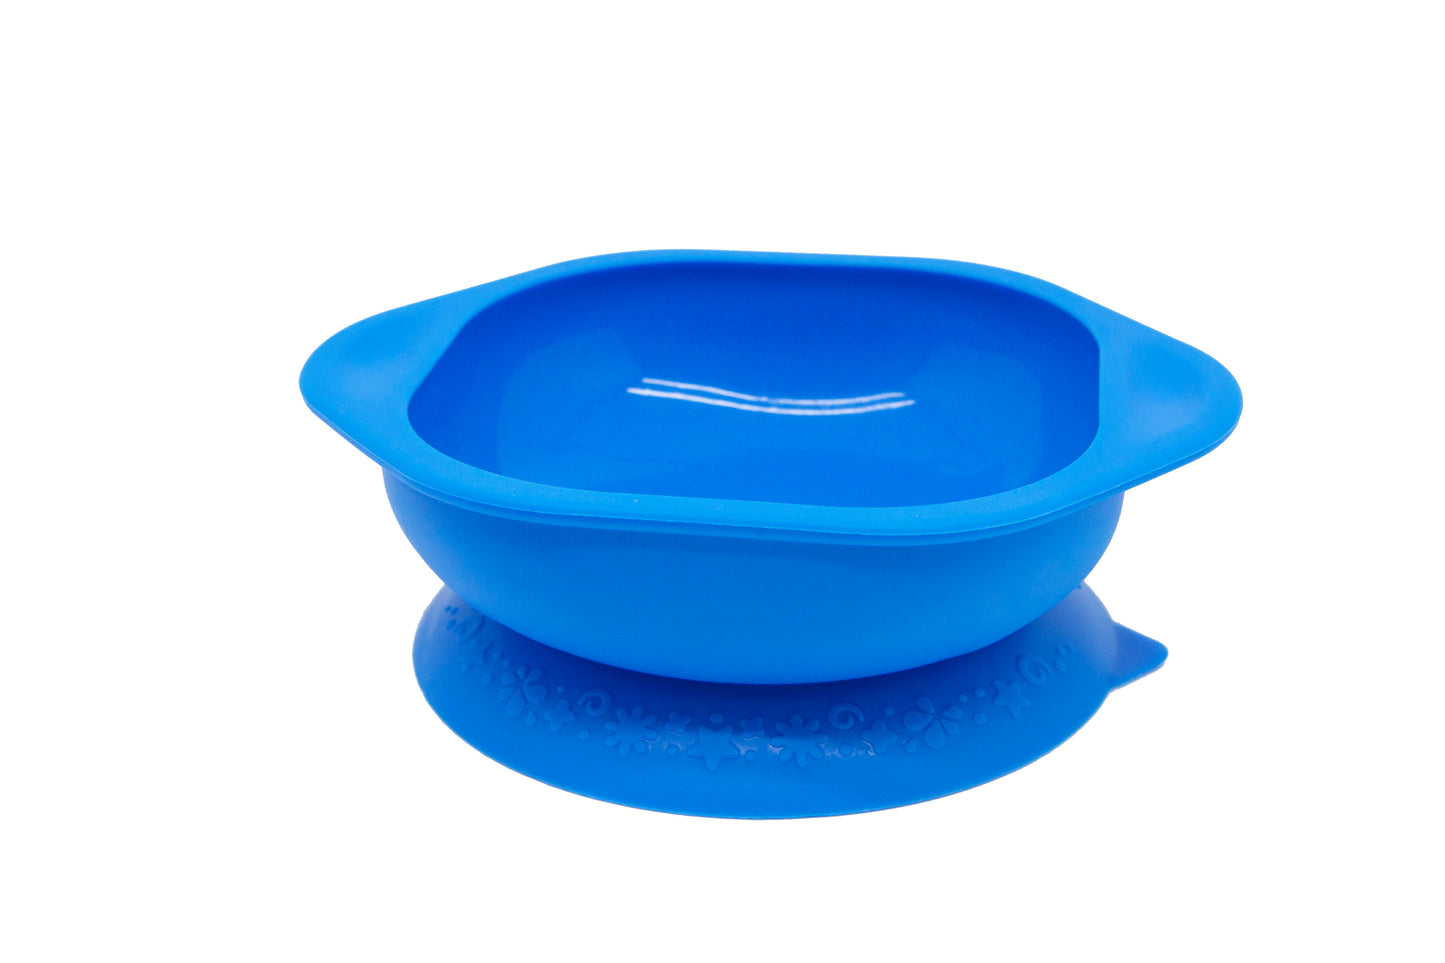 Bowl de silicona con base adherible